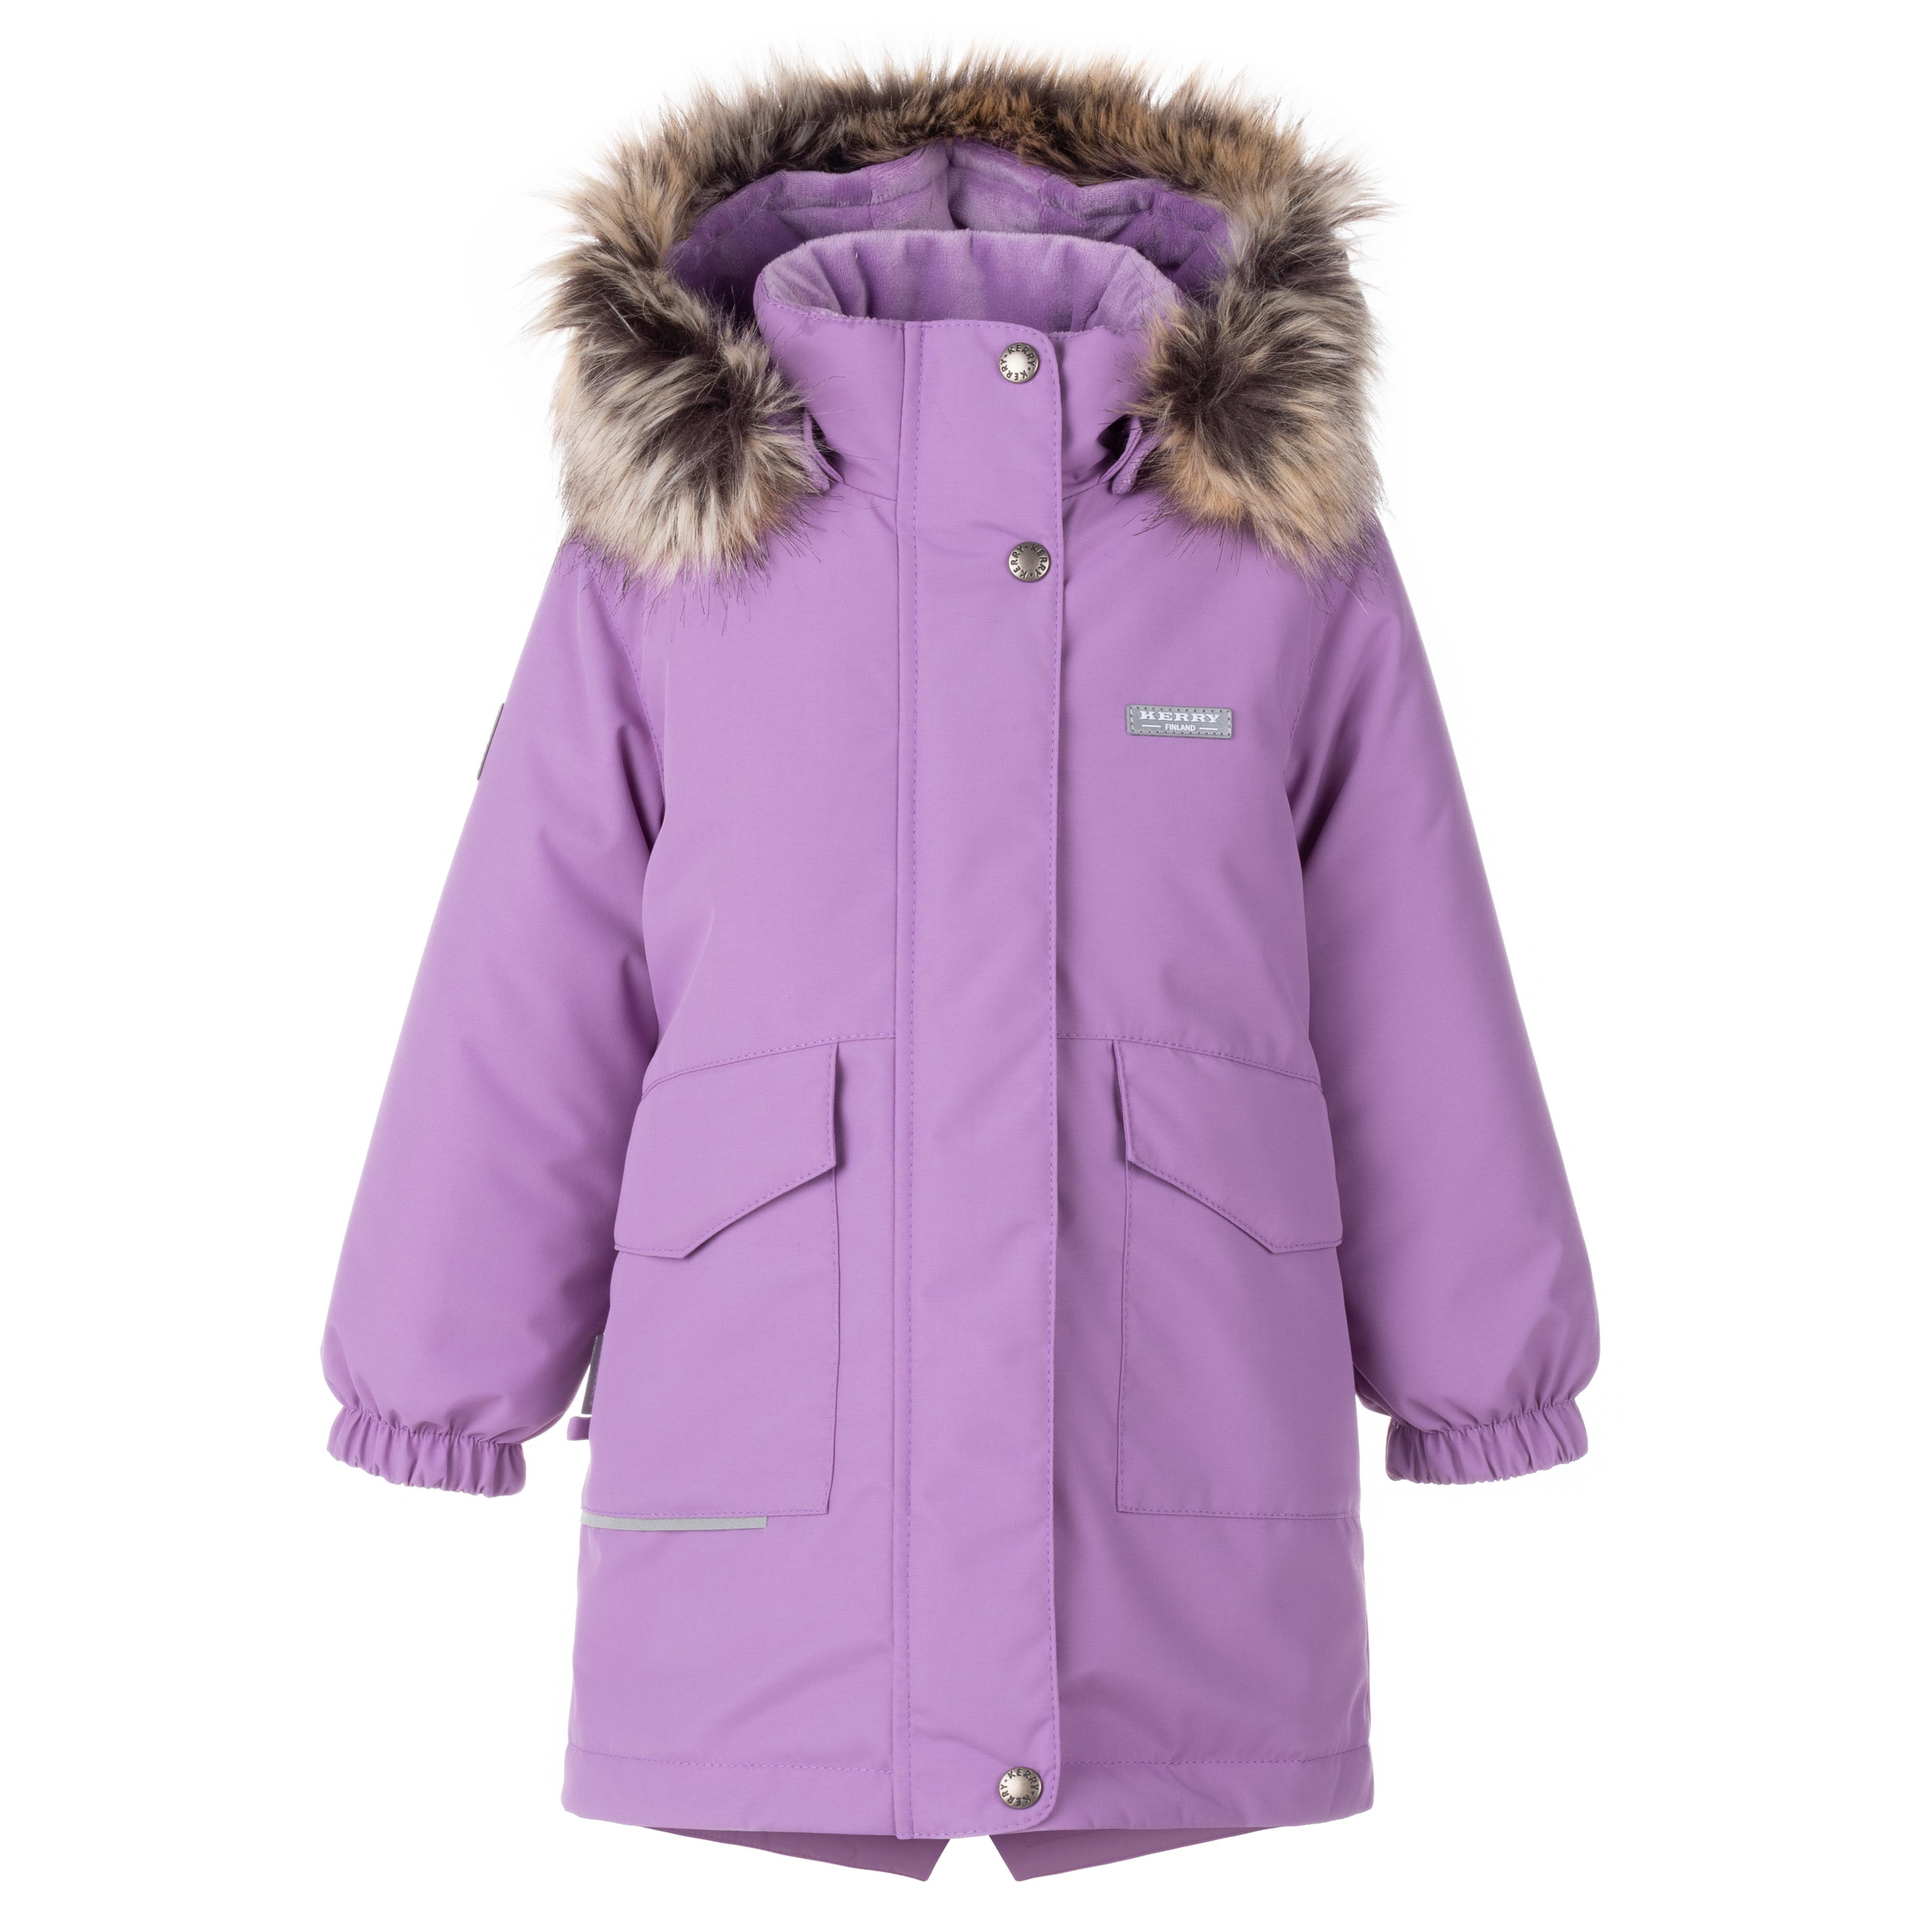 Куртка детская KERRY K23434, фиолетовый, 128